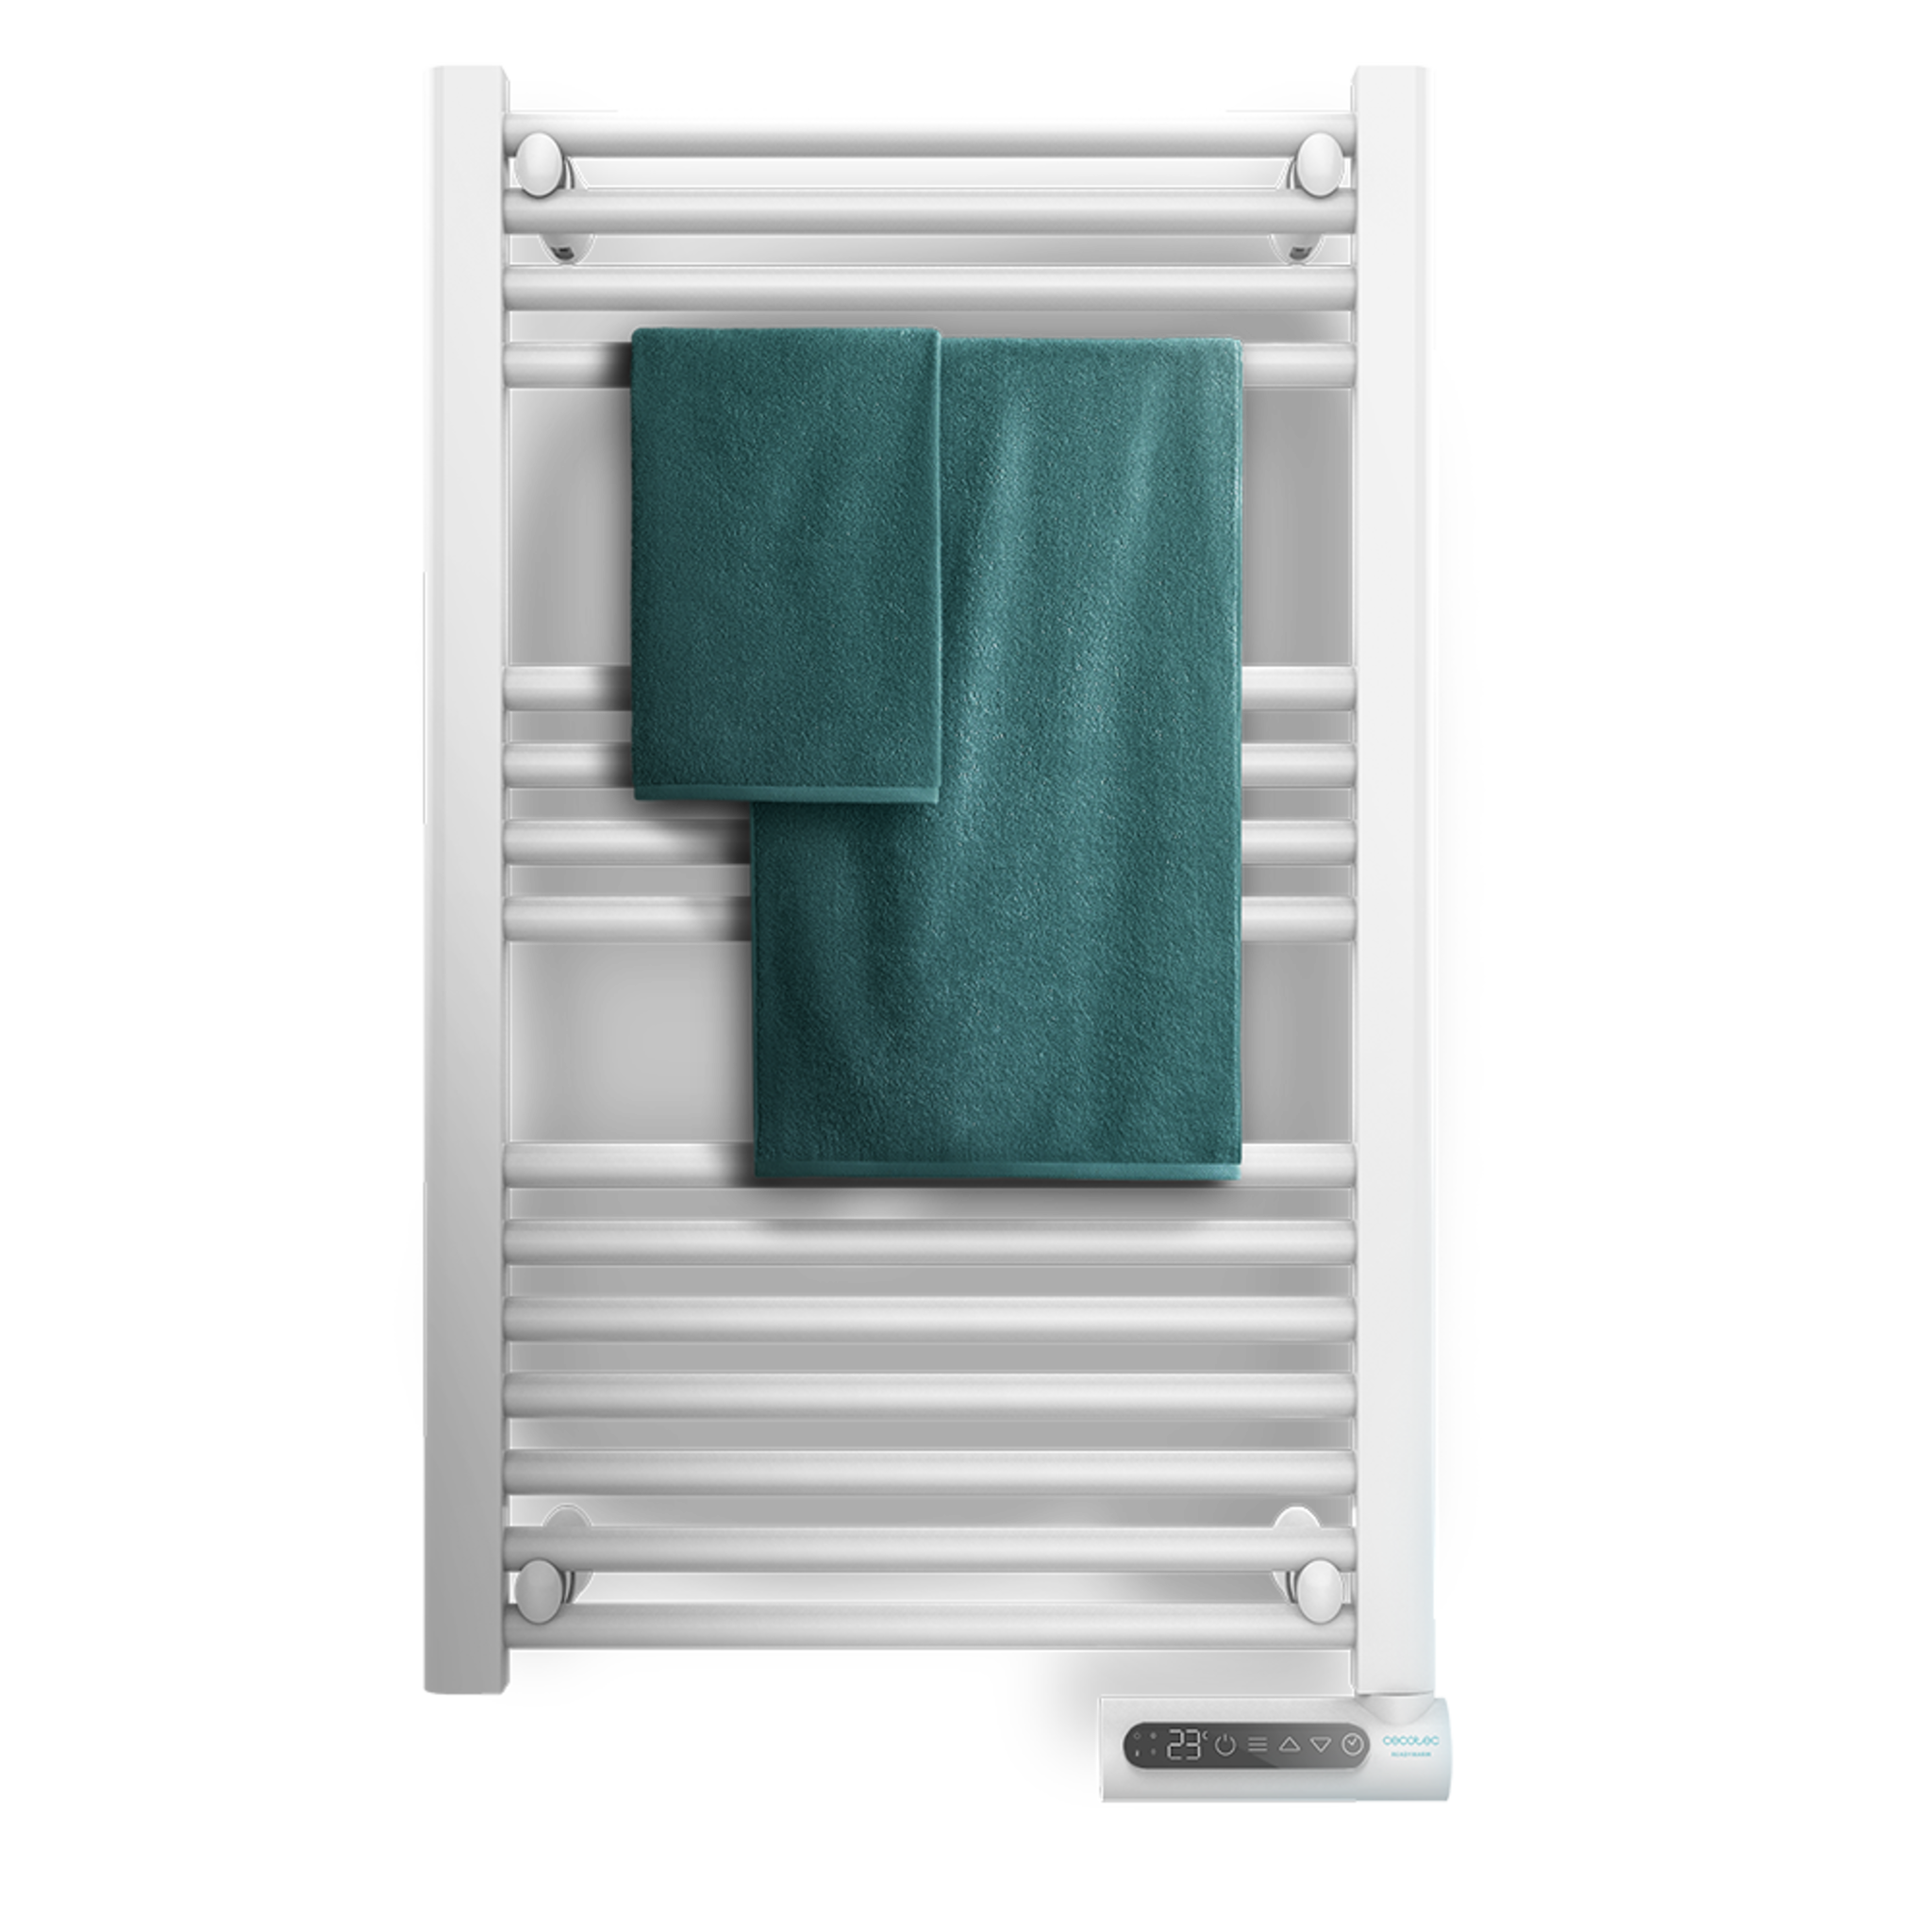 Sèche-serviettes électrique à faible consommation Ready Warm 9100 Smart Towel White. 500 W, écran LED, contrôle tactile, minuterie, 3 modes de fonctionnement, 2 systèmes de sécurité